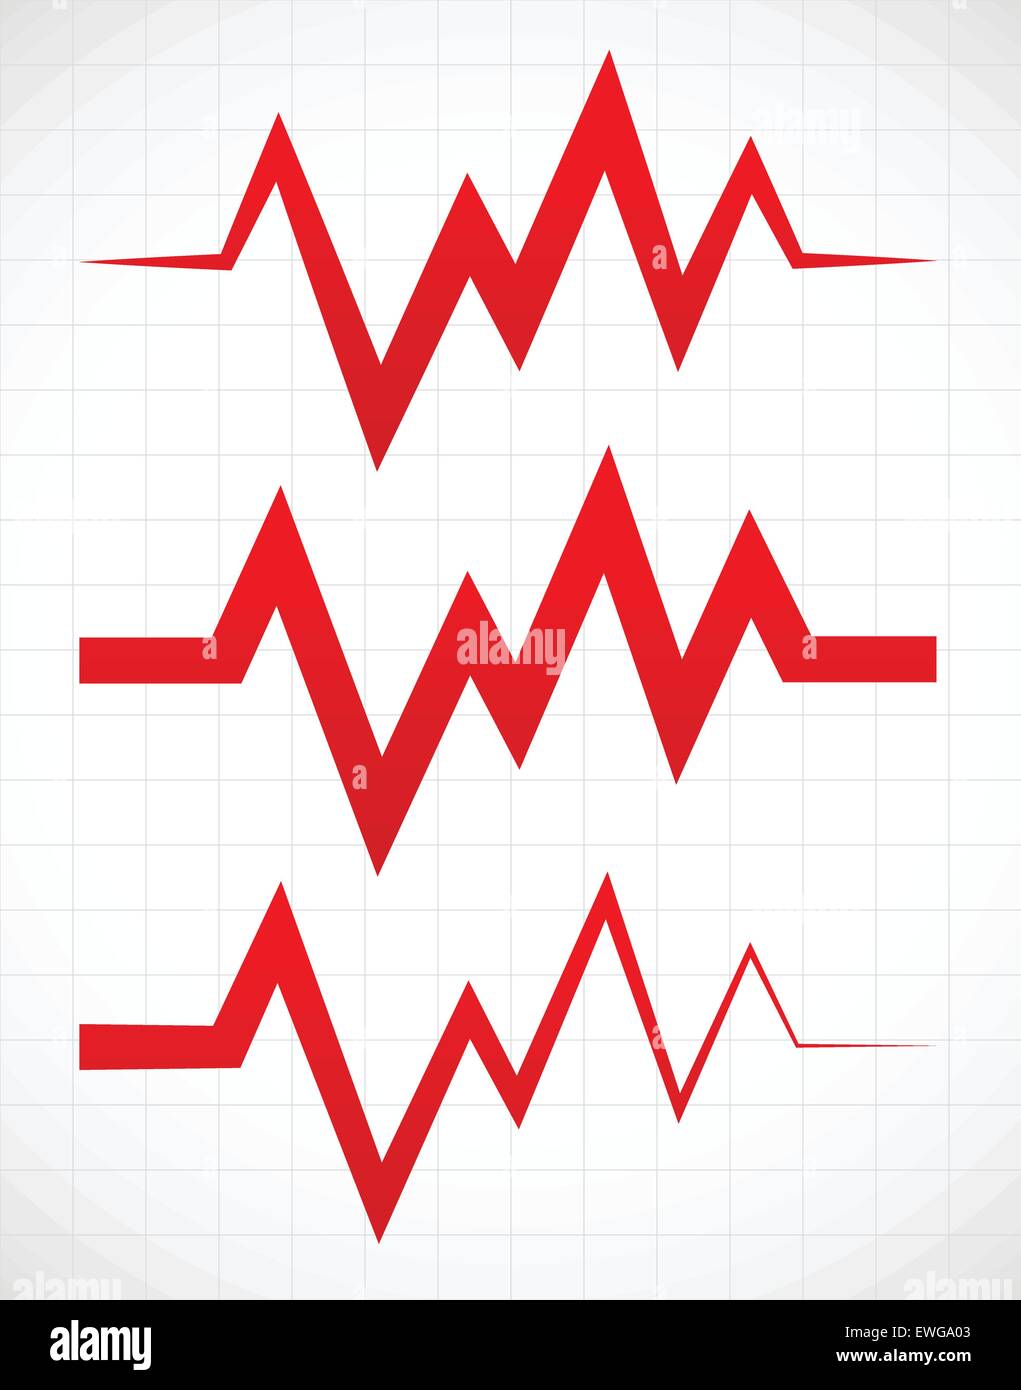 Irregular pulsating or ECG lines over gridded background Stock Vector